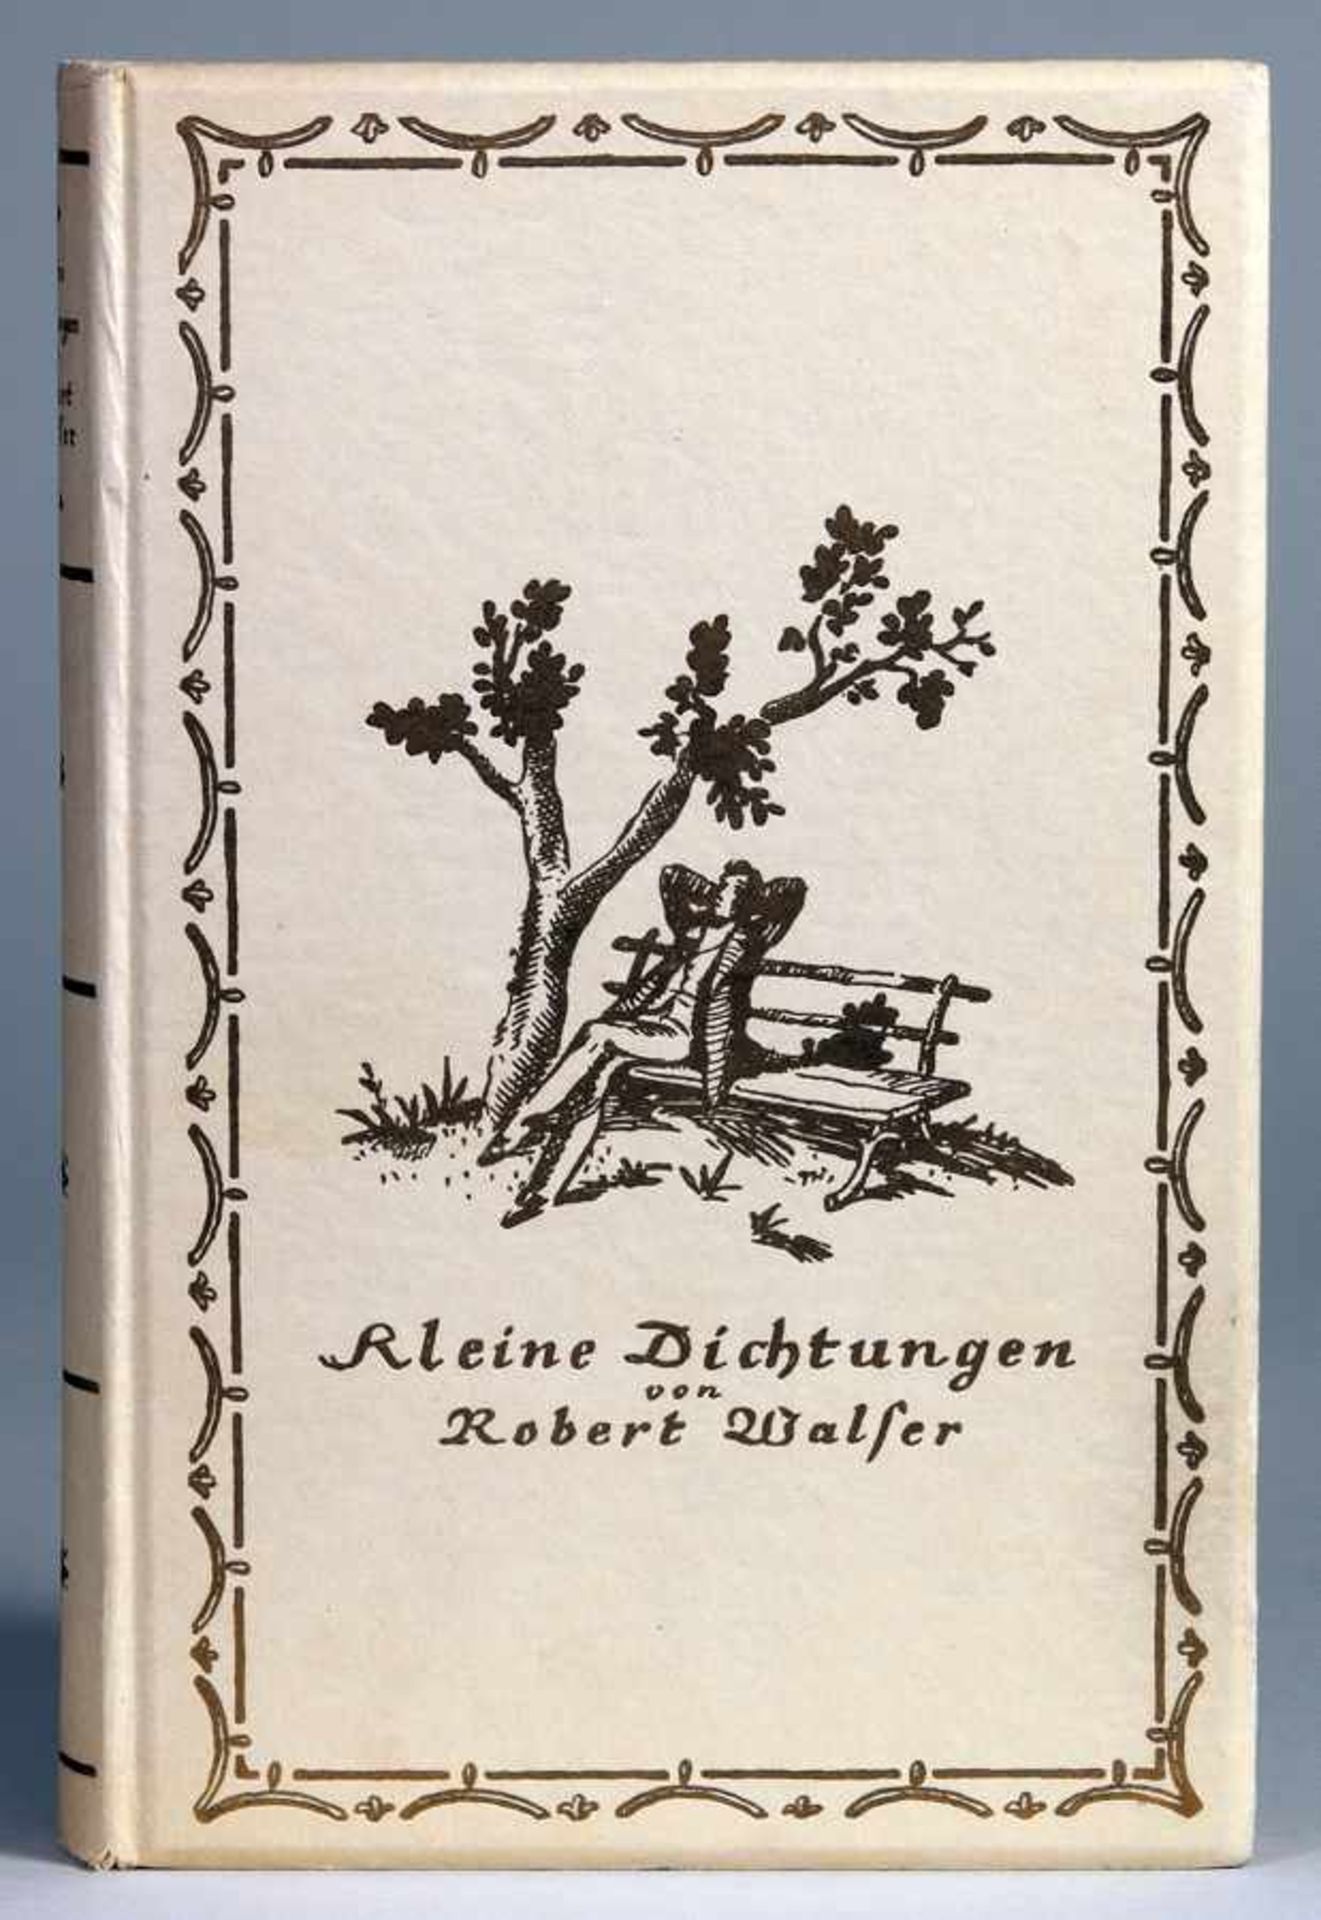 Robert Walser. Kleine Dichtungen. Erste Auflage hergestellt für den Frauenbund zur Ehrung